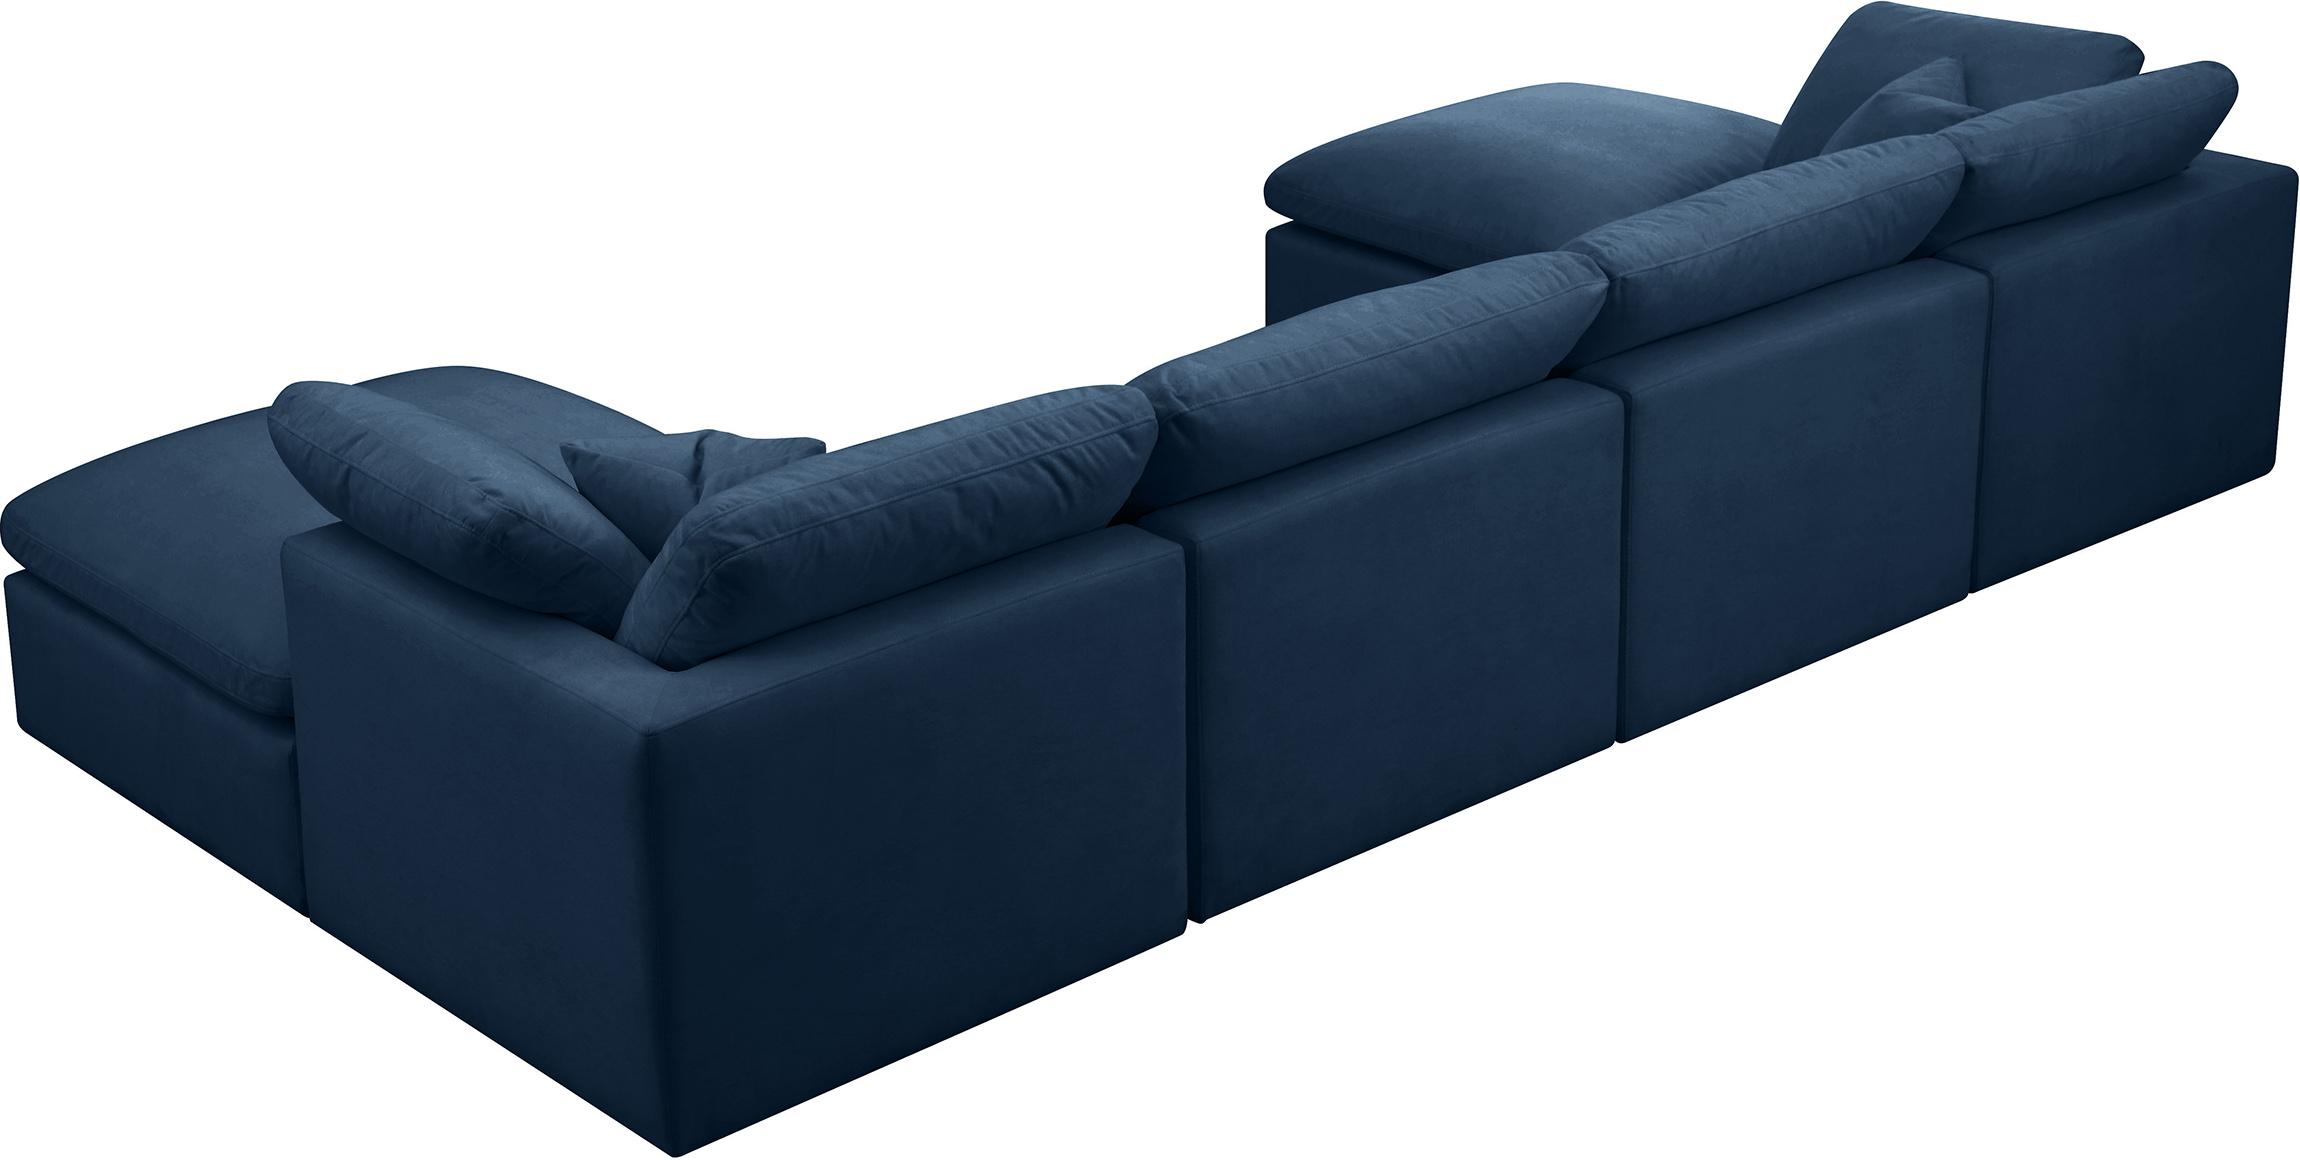 

        
Meridian Furniture 602Navy-Sec6B Modular Sectional Sofa Navy Fabric 753359805955
